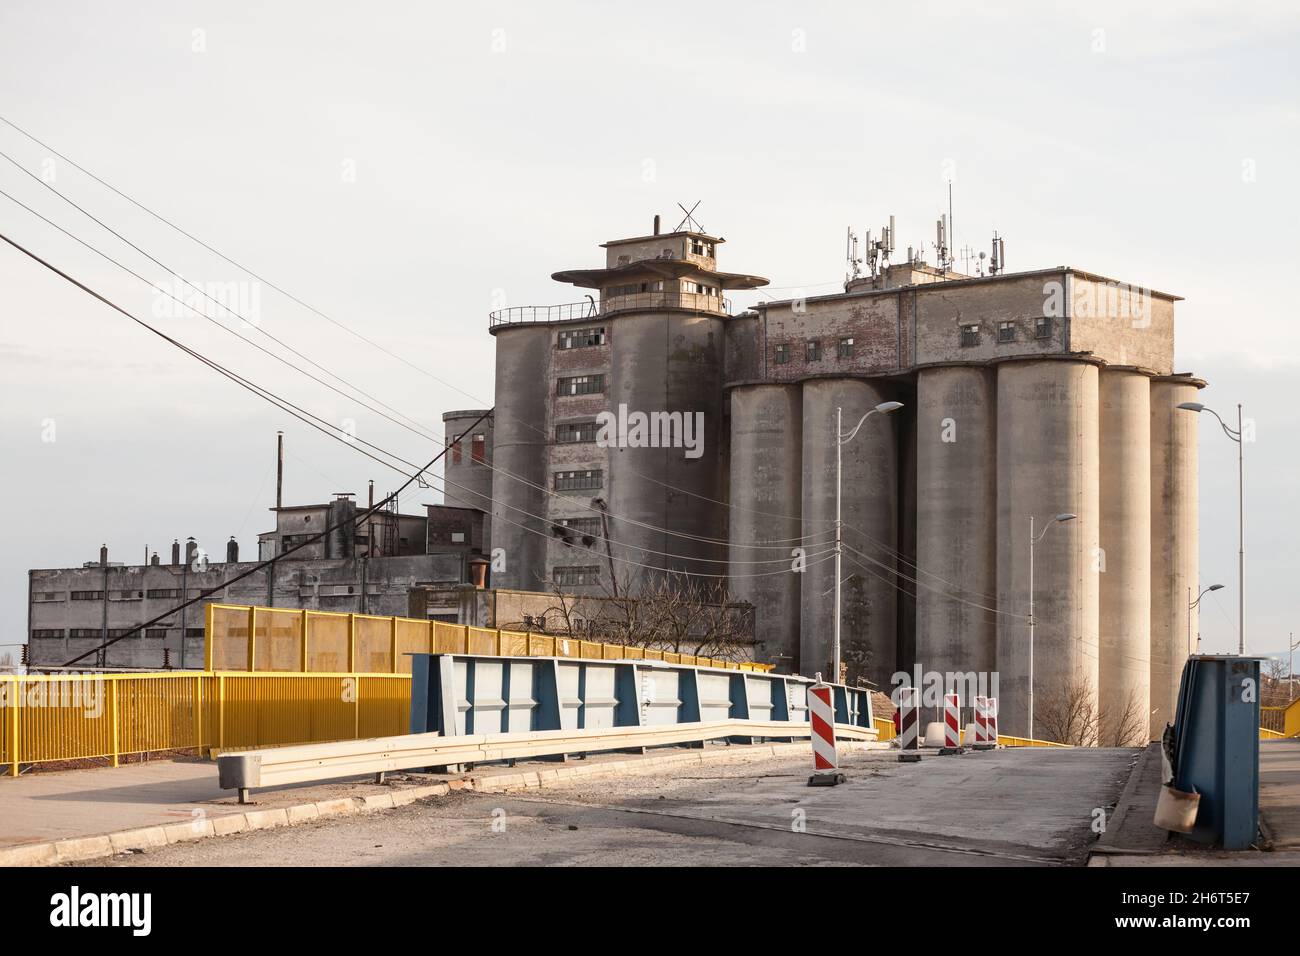 Immagine di un silo di cemento, elevato, abbandonato, che è stato utilizzato nell'industria agricola di produzione per immagazzinare grani, semi e grano. Foto Stock